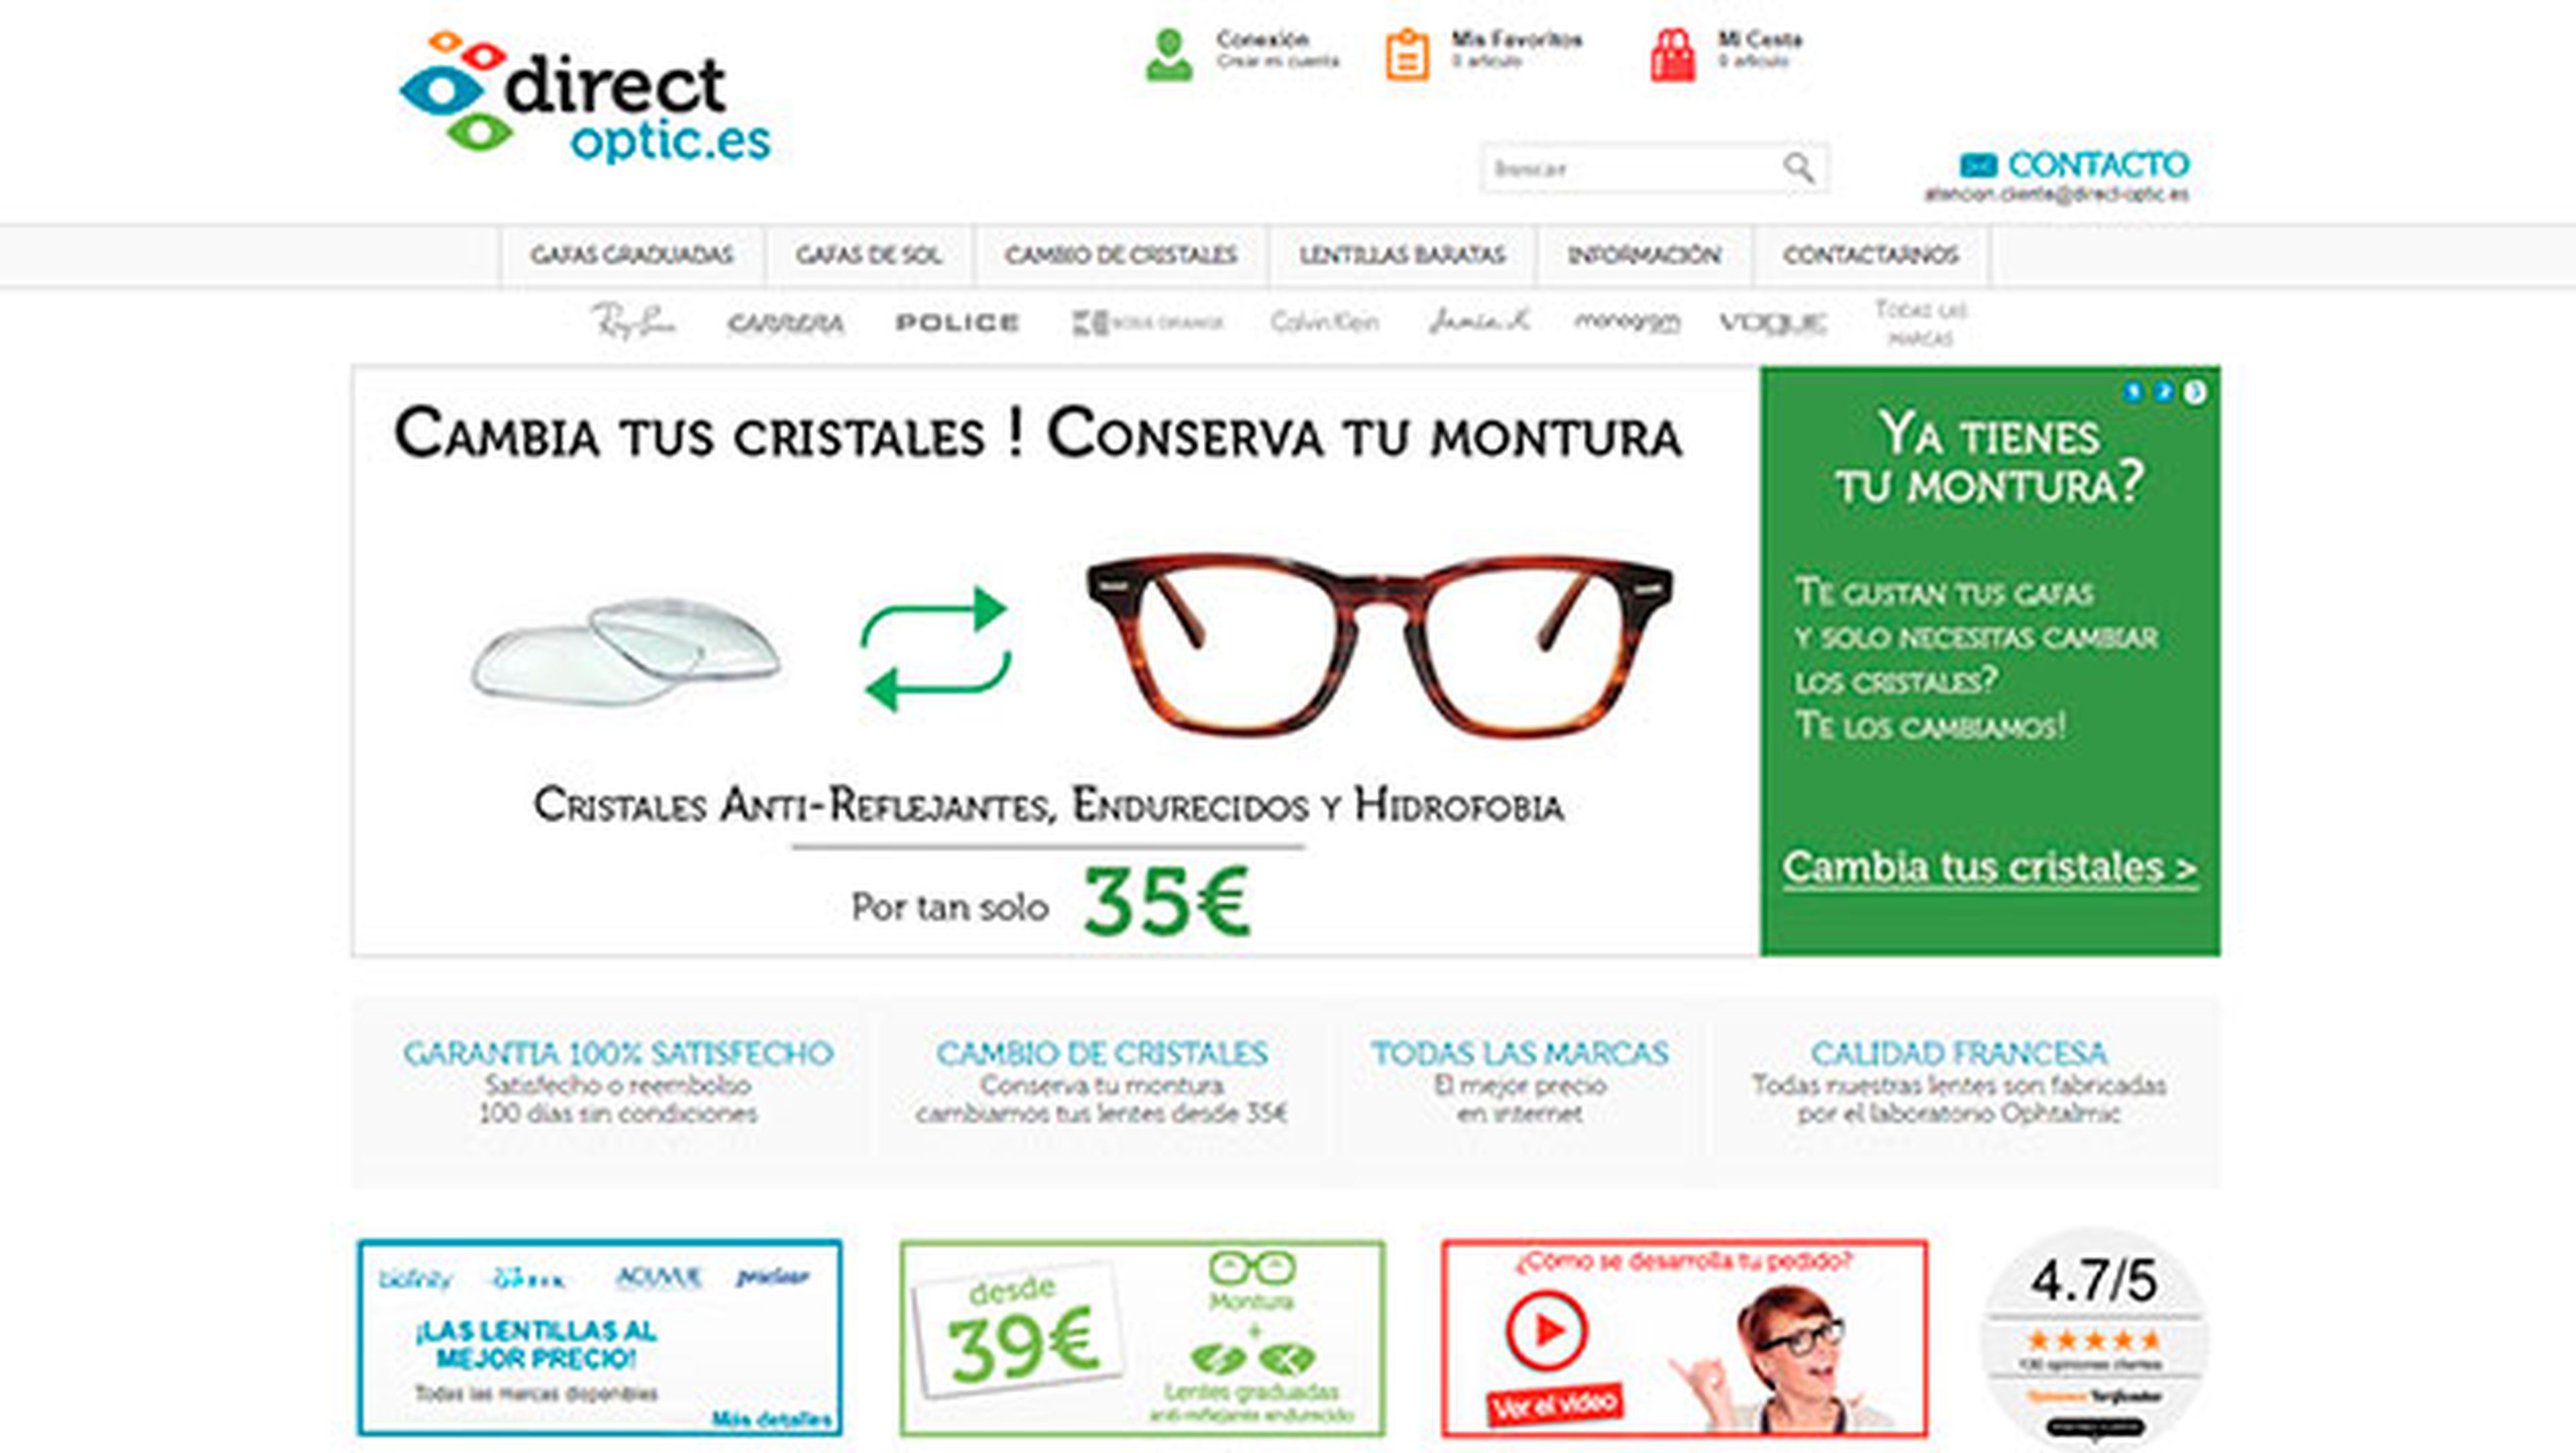 DirectOptic.es